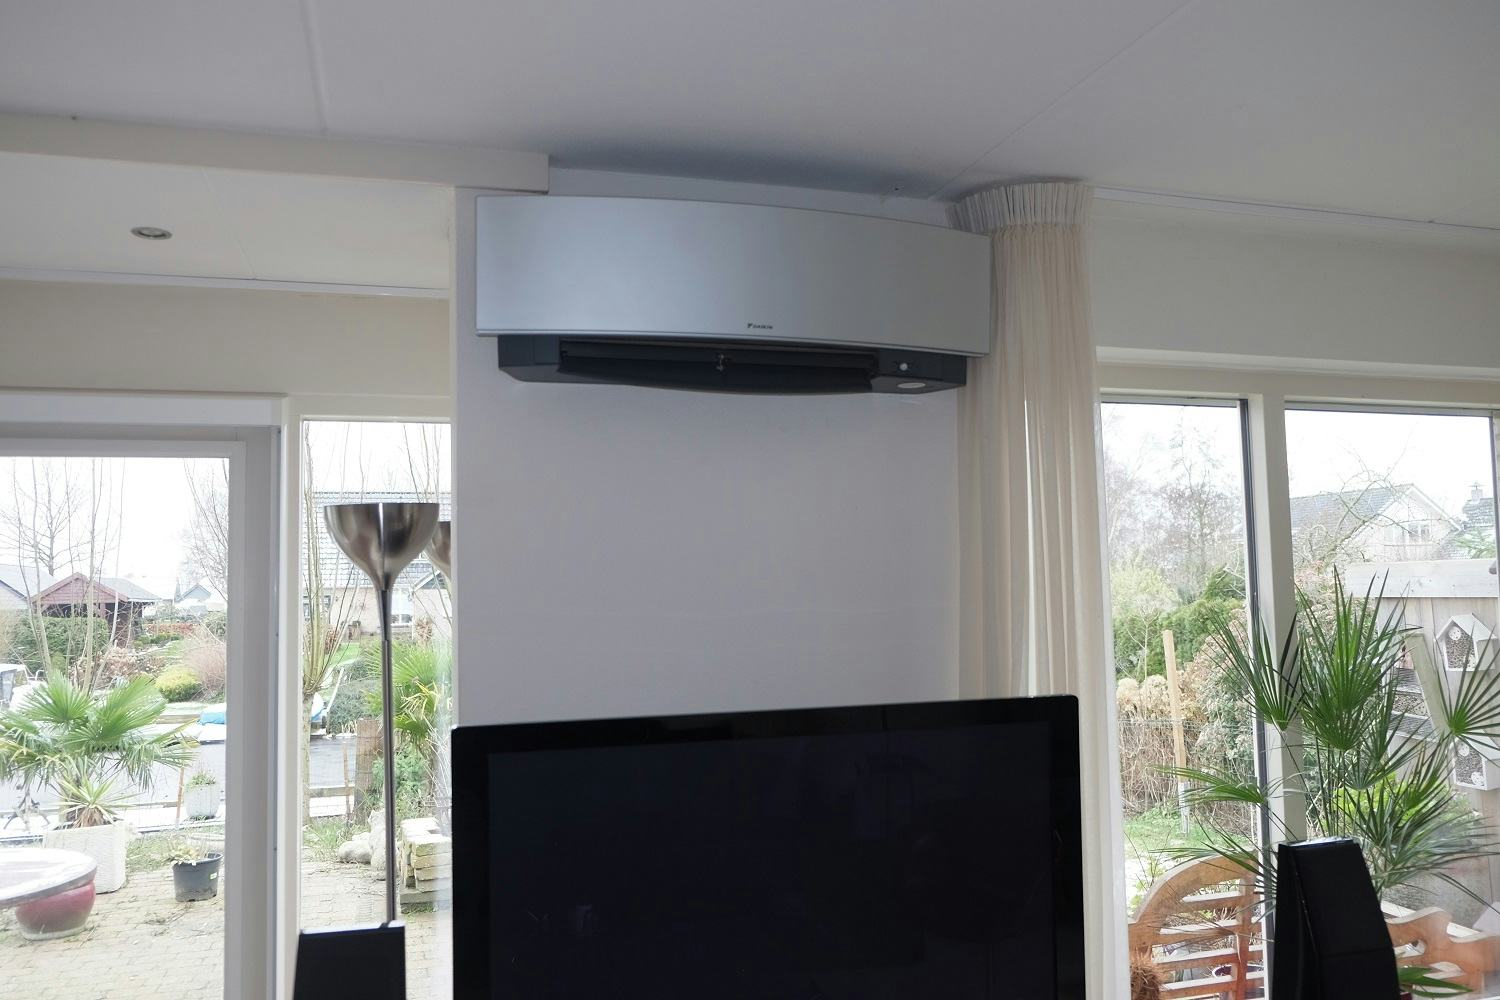 Productie Verlichten complicaties Airconditioning houdt huis ook bij winterweer lekker warm